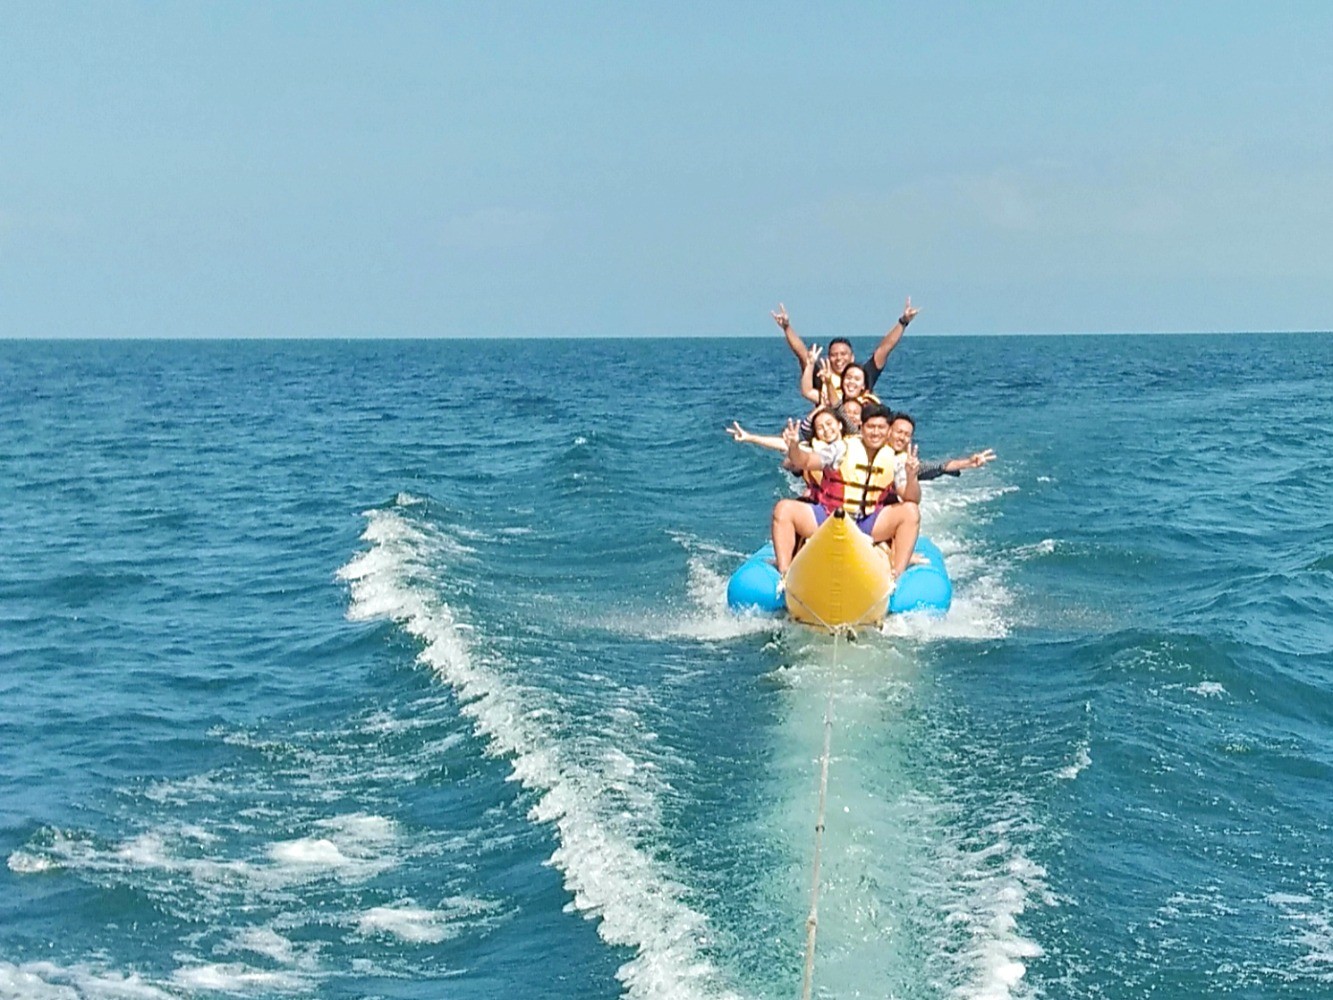 wahana water sport banana boat